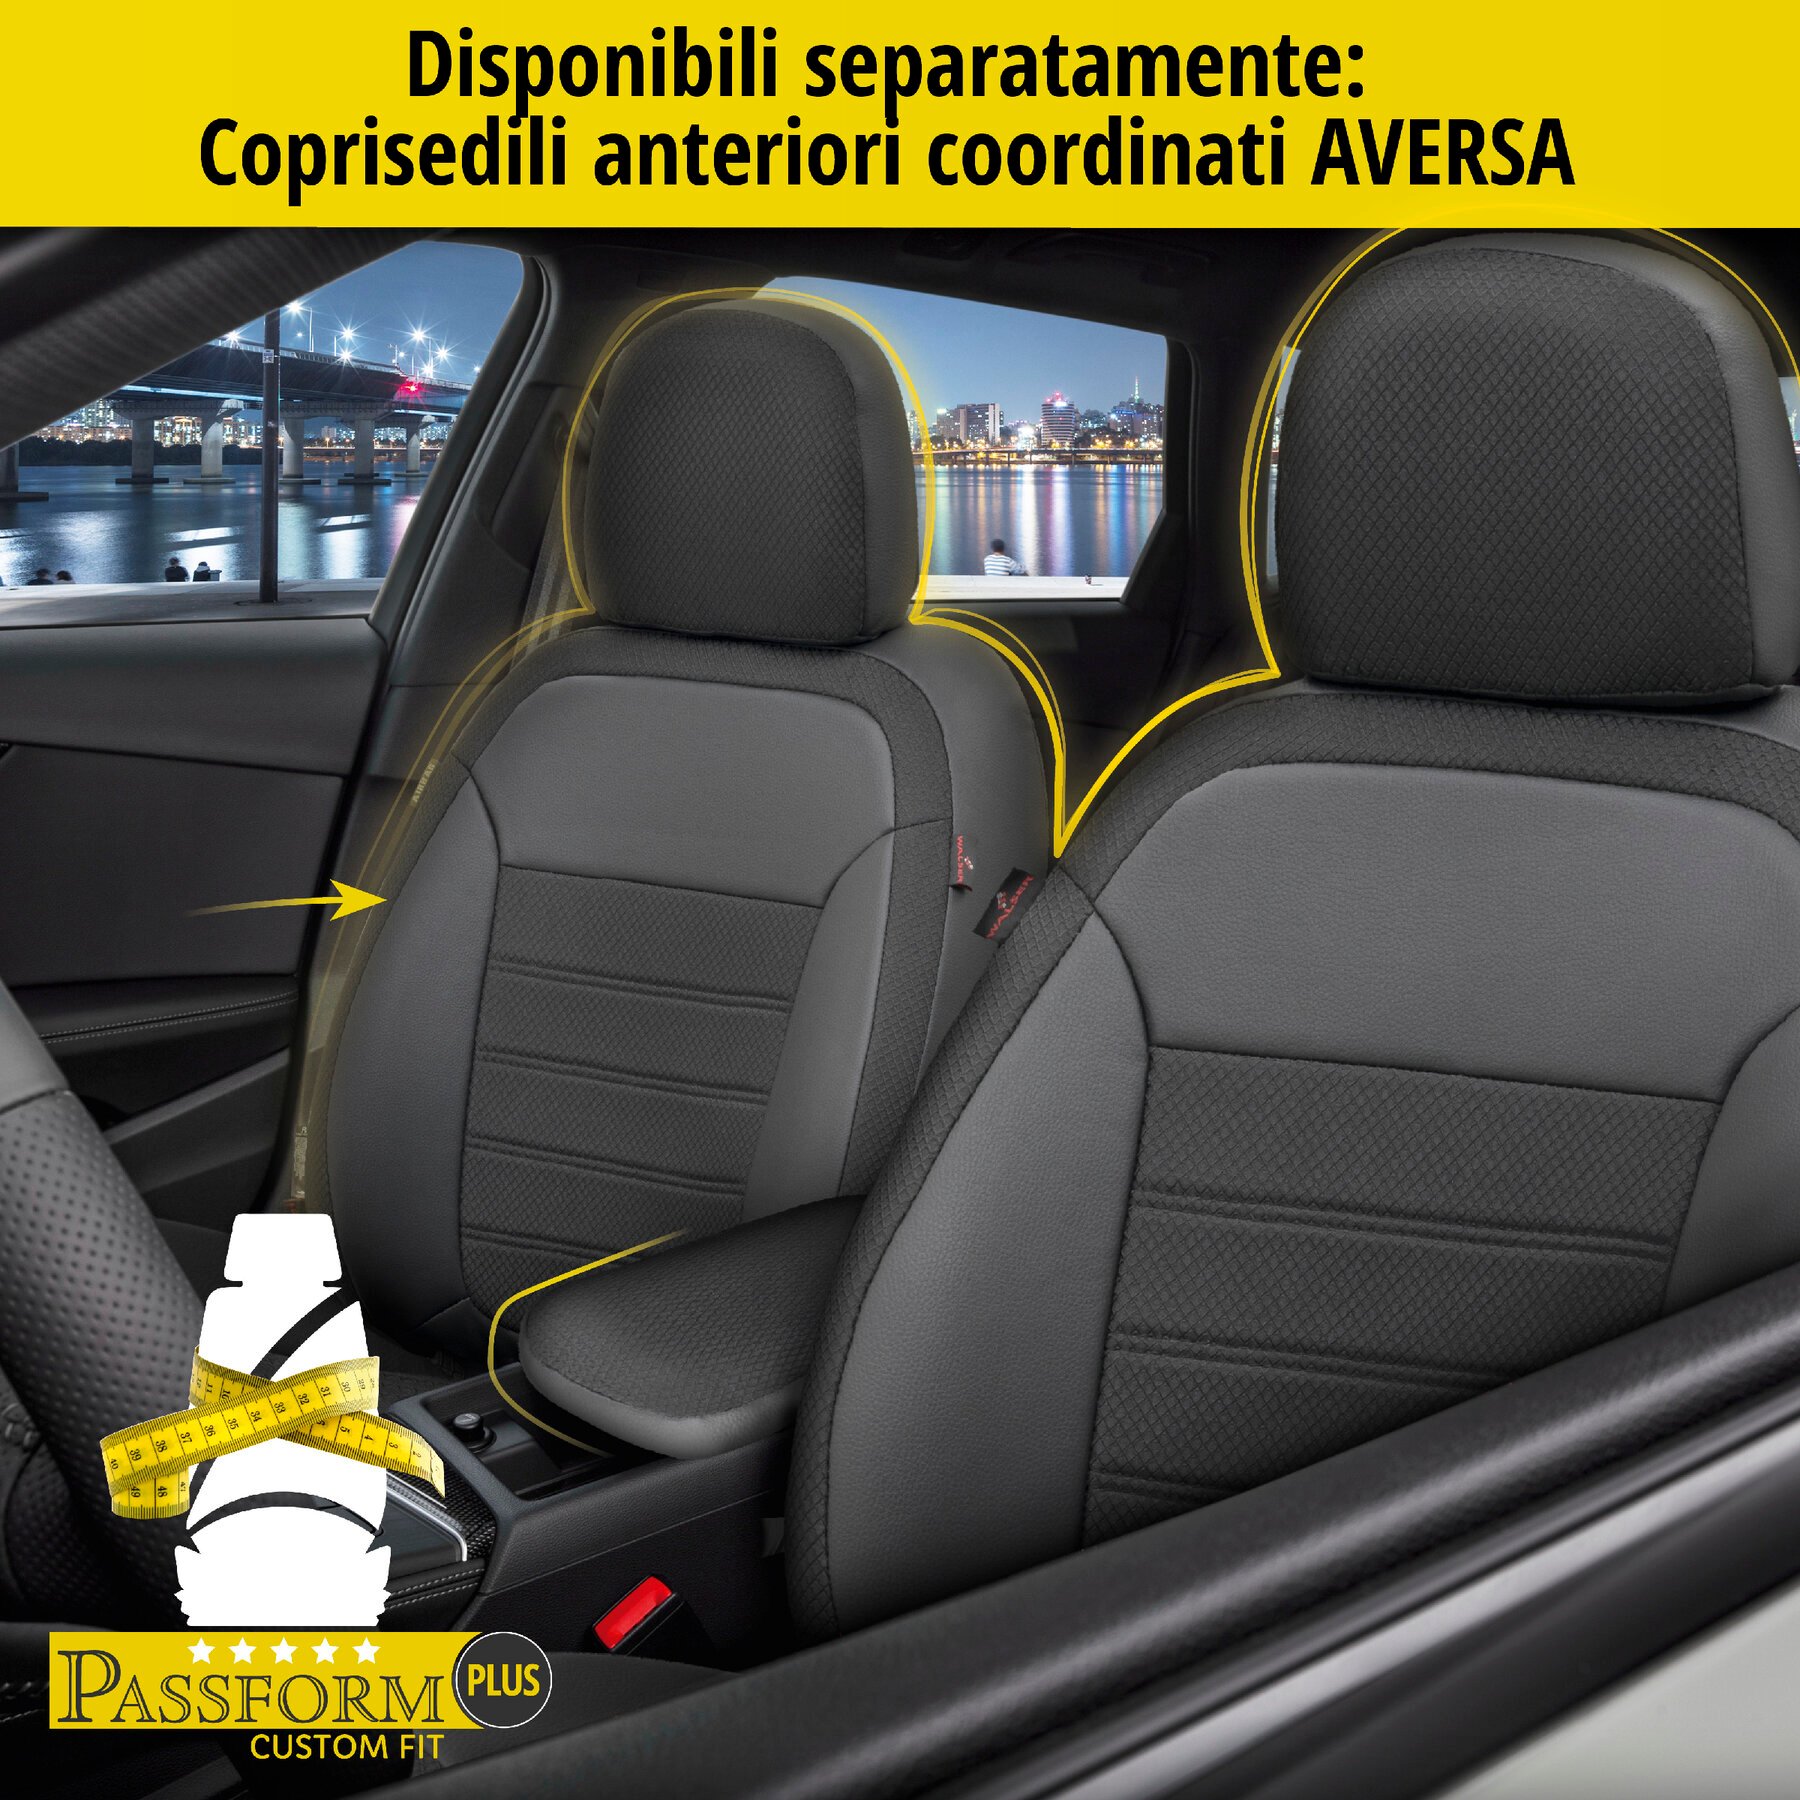 Coprisedili Aversa per VW Tiguan (AD1) 01/2016-Oggi, 1 coprisedili posteriore per sedili normali